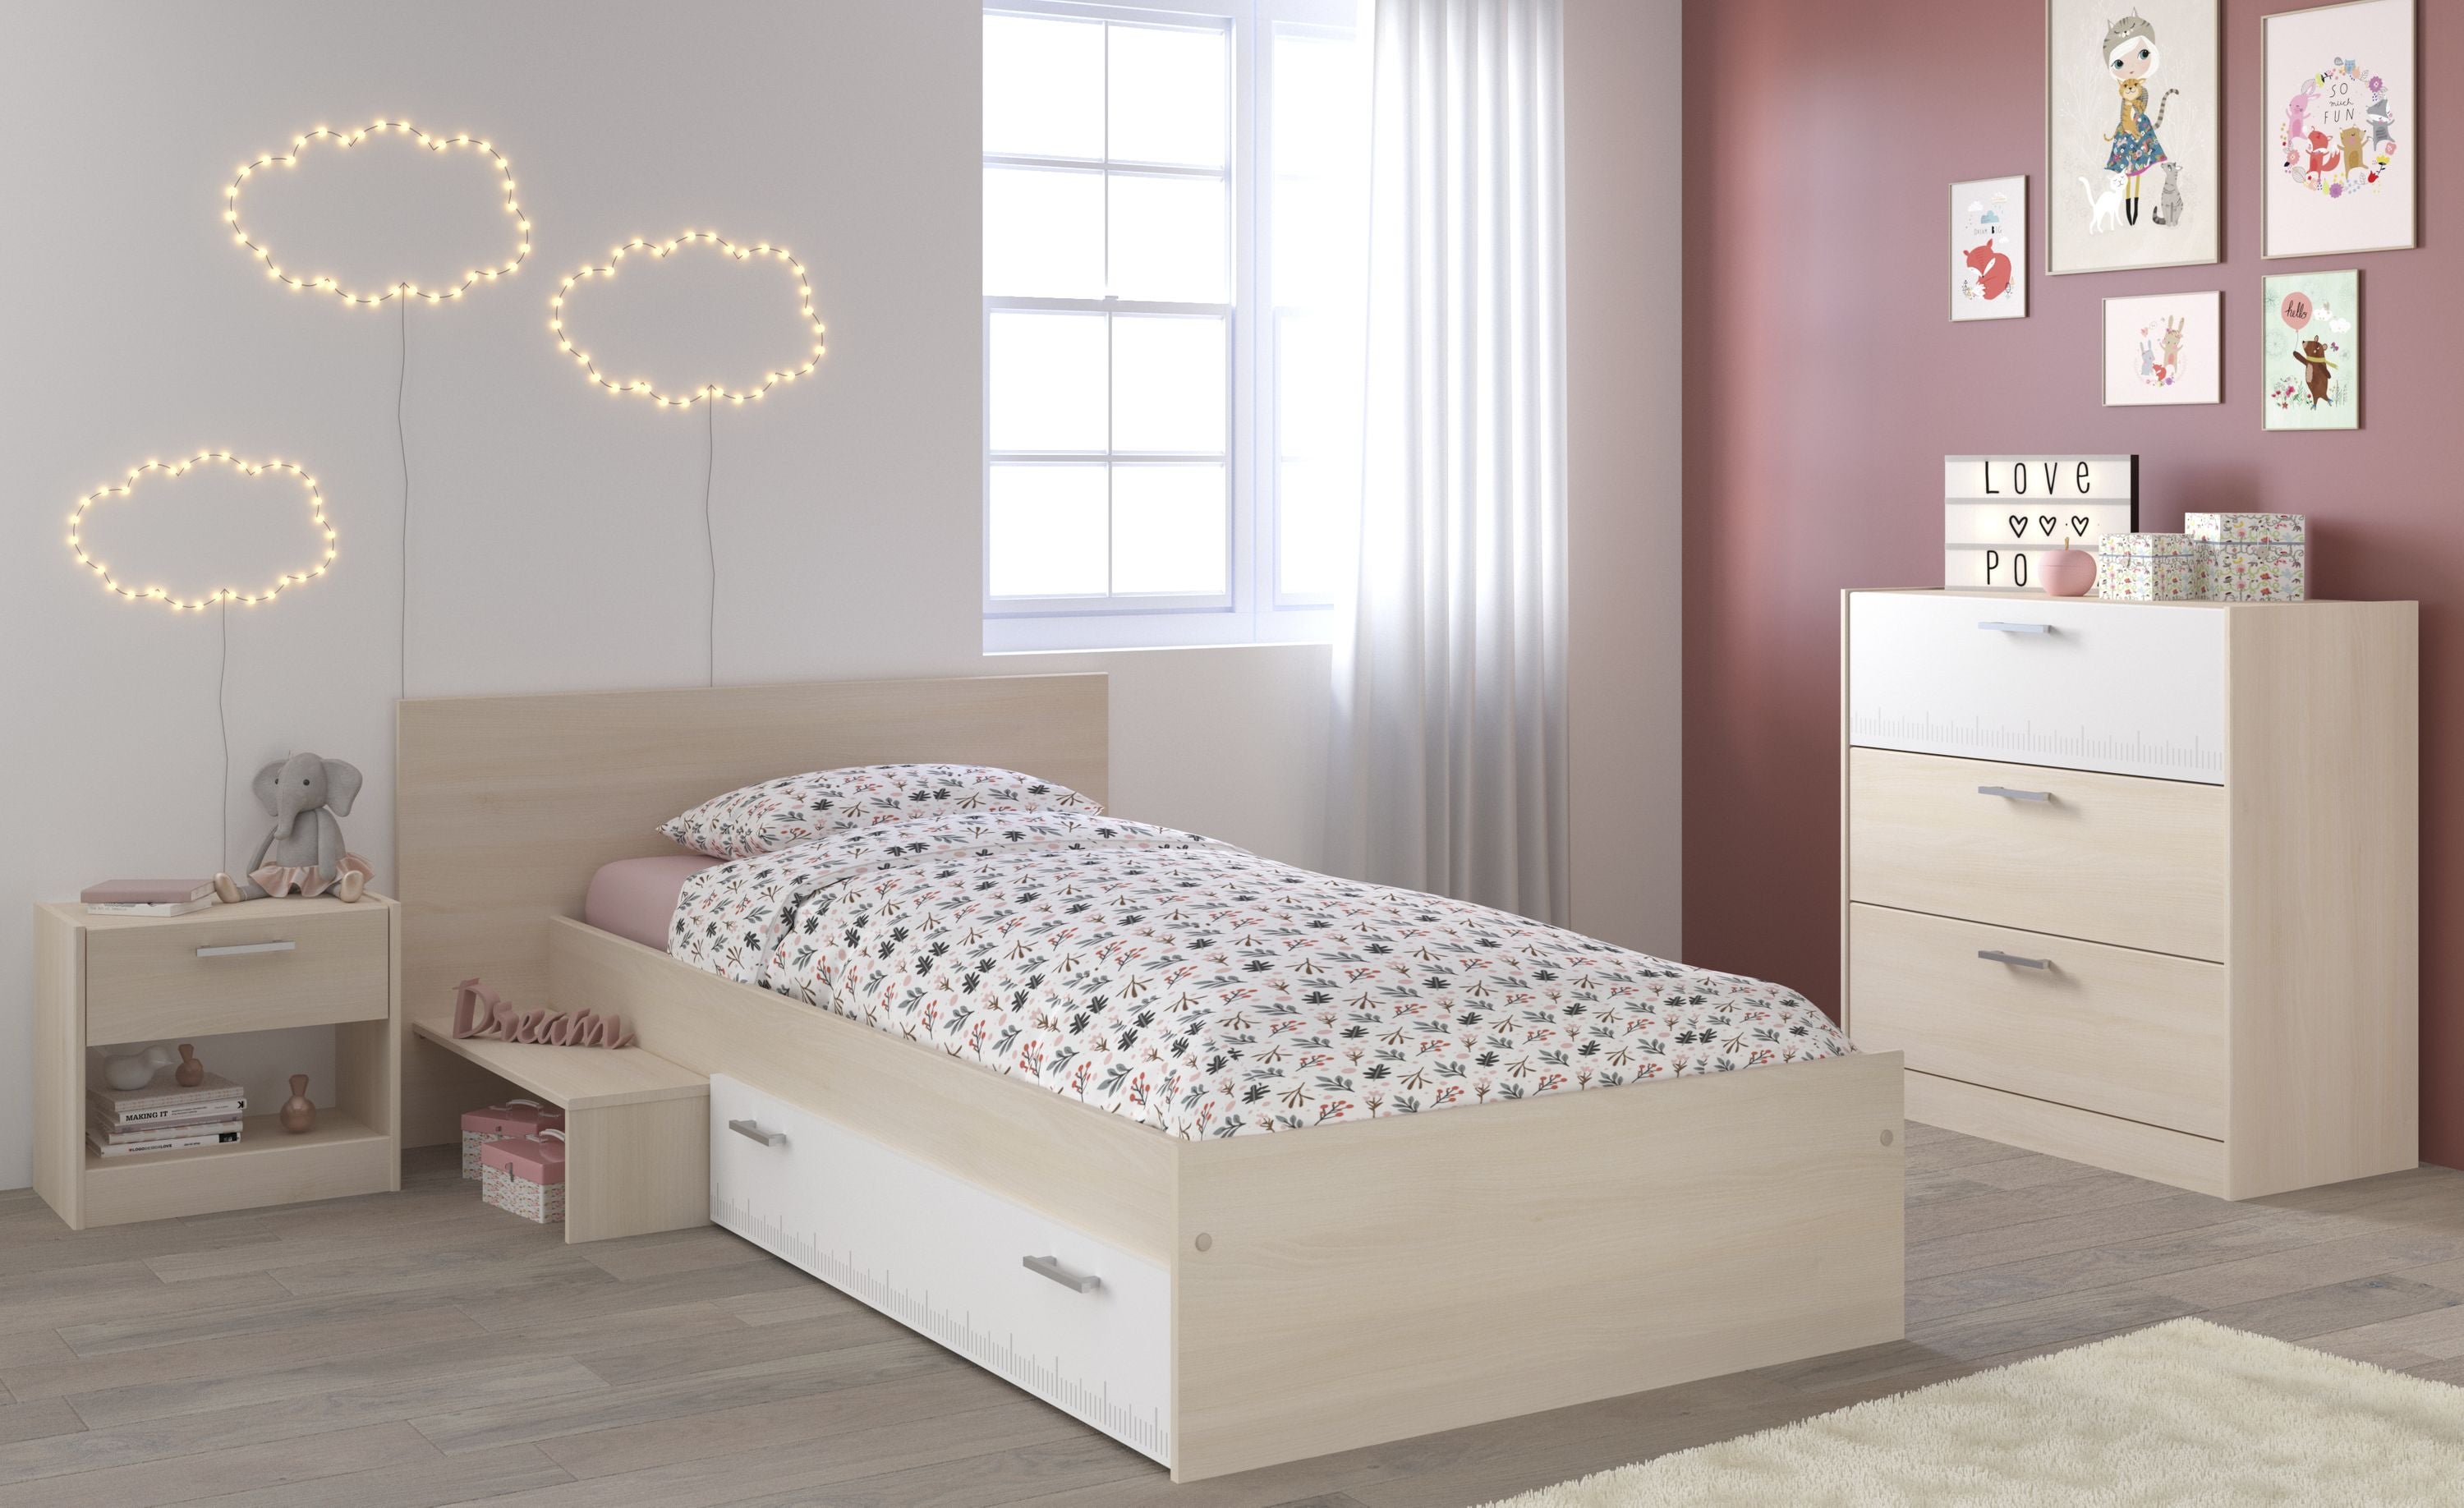 Kinderzimmer Charly 13 Parisot 3-tlg Bett 90*200 cm + Kommode + Nachtkommode beige - weiß